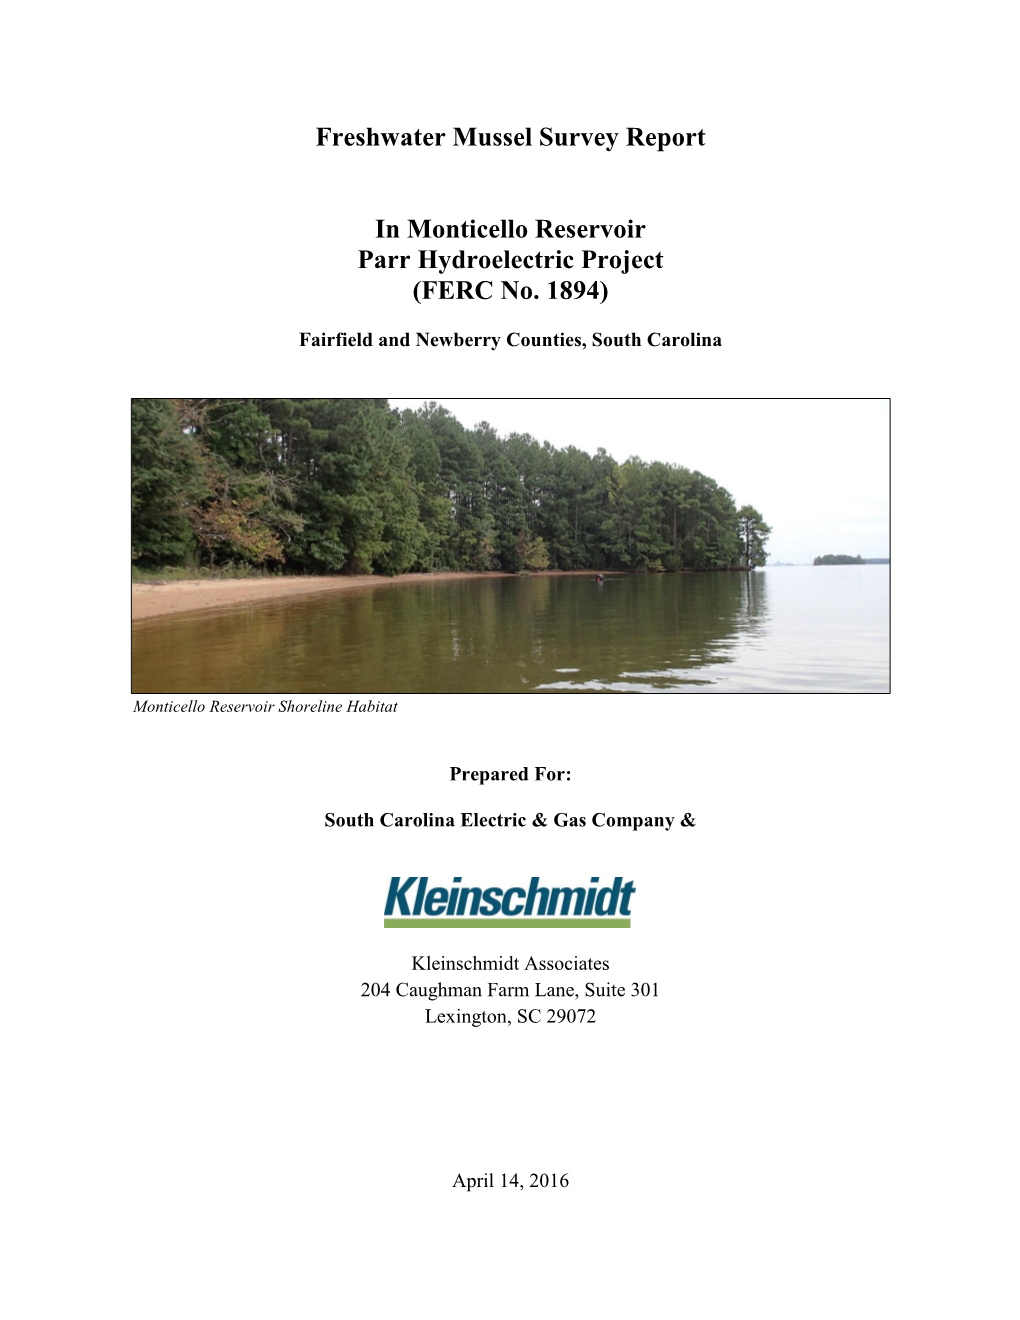 Monticello Reservoir Mussel Survey Report